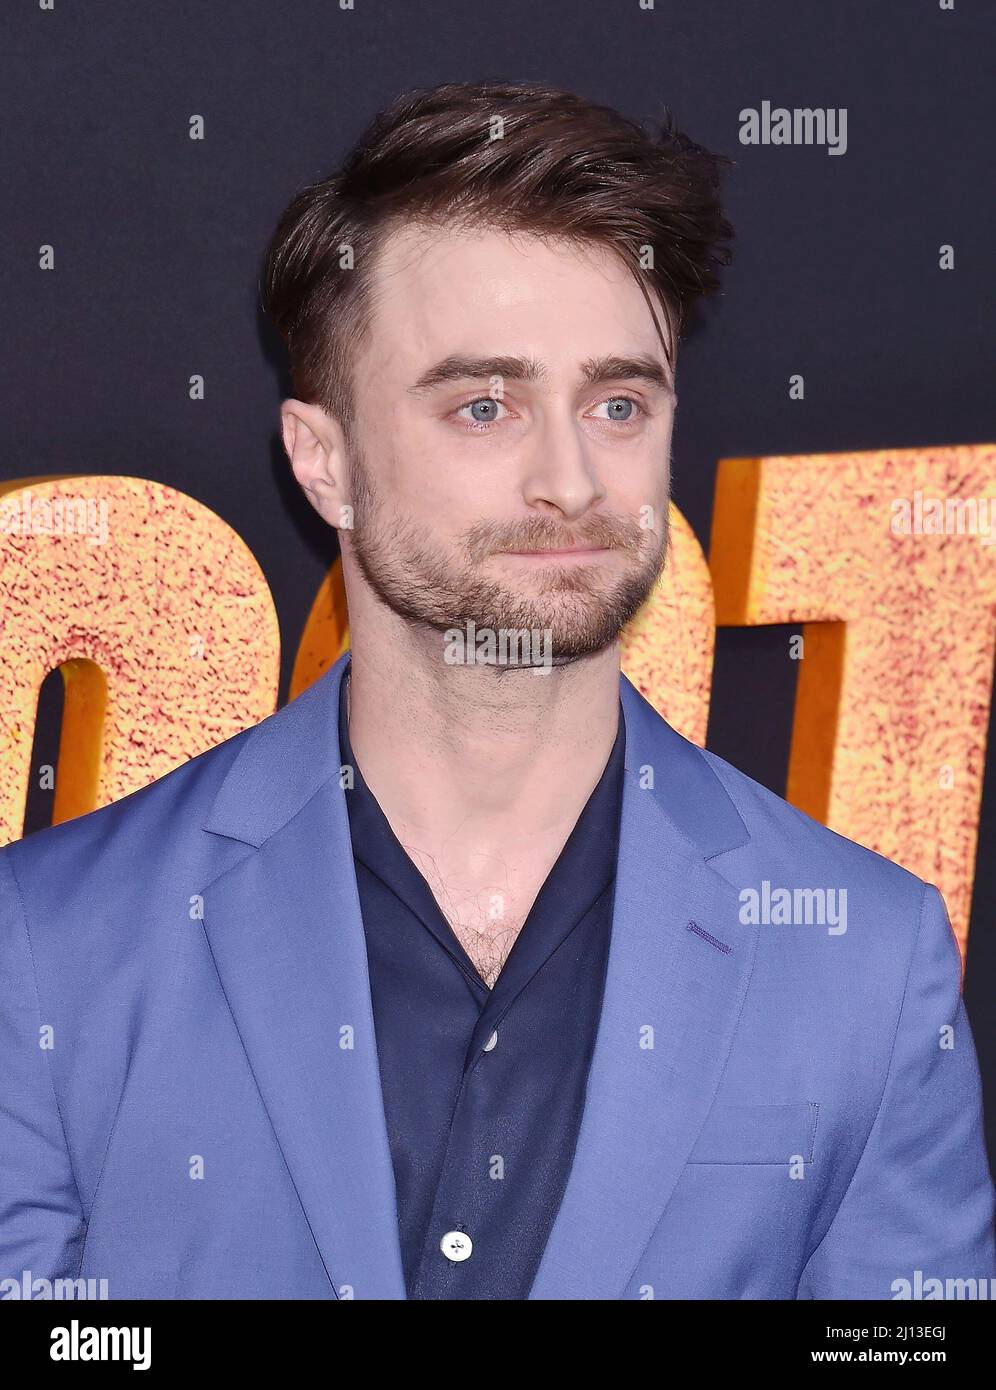 LOS ANGELES, CA - MARZO 21: Daniel Radcliffe partecipa alla prima di Los Angeles di Paramount Pictures' 'The Lost City' al Regency Village Theatre di Mar Foto Stock